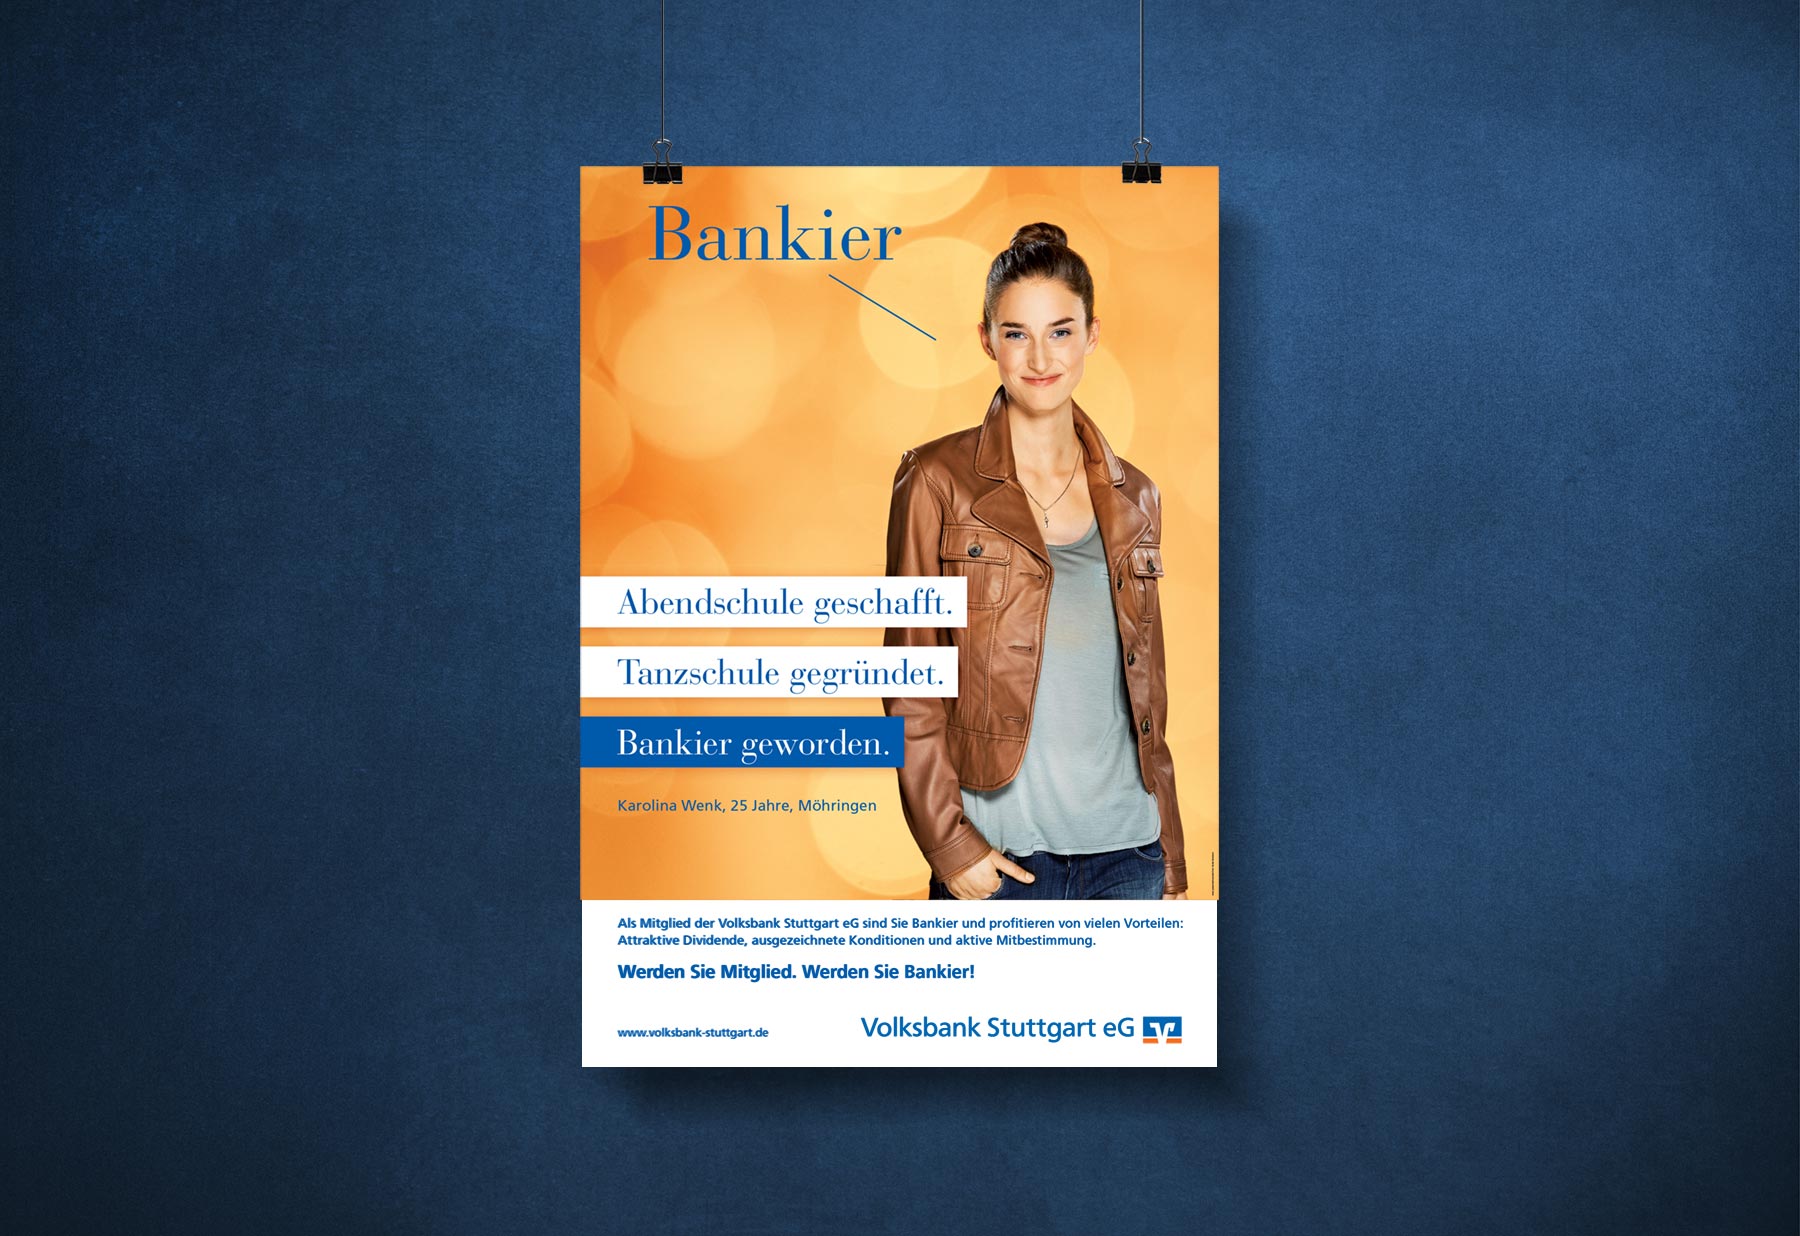 Volksbank Stuttgart Bankier Markenkommunikation Anzeige